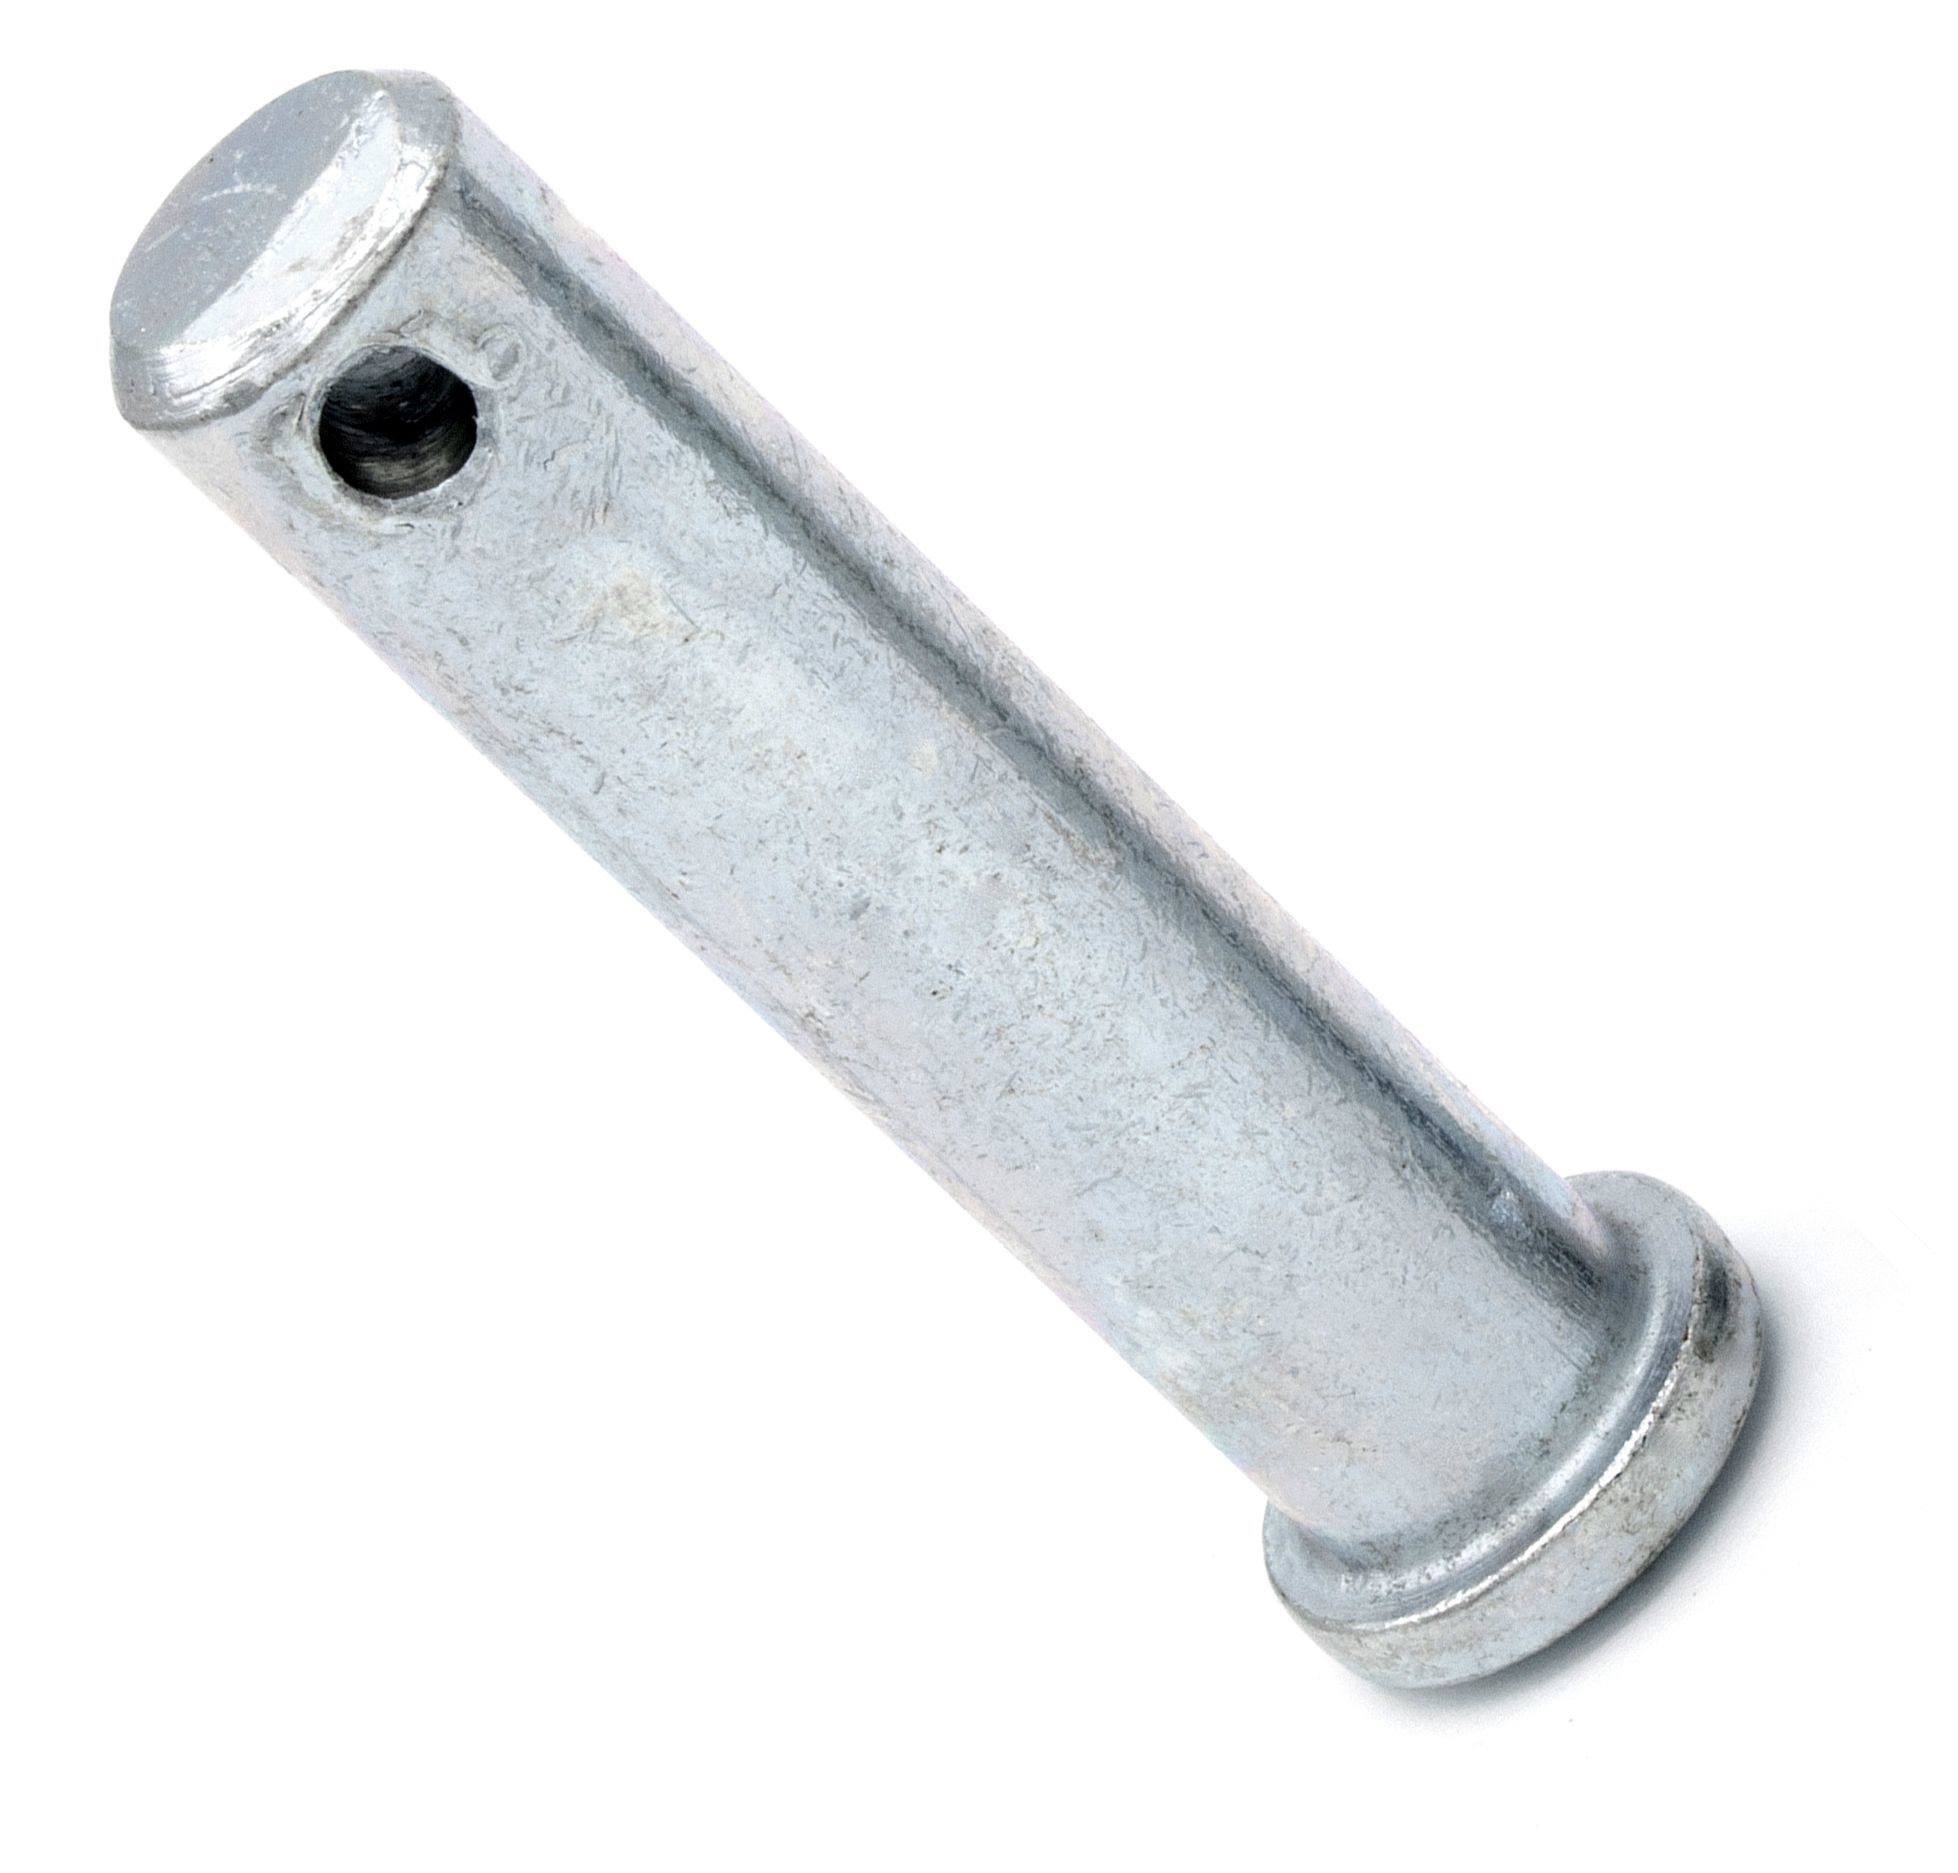 Bullone di bloccaggio zincato 6 mm x 25 mm (10 pezzi) Bullone a spacco Spina a bussola Spina di bloccaggio Spina a bussola